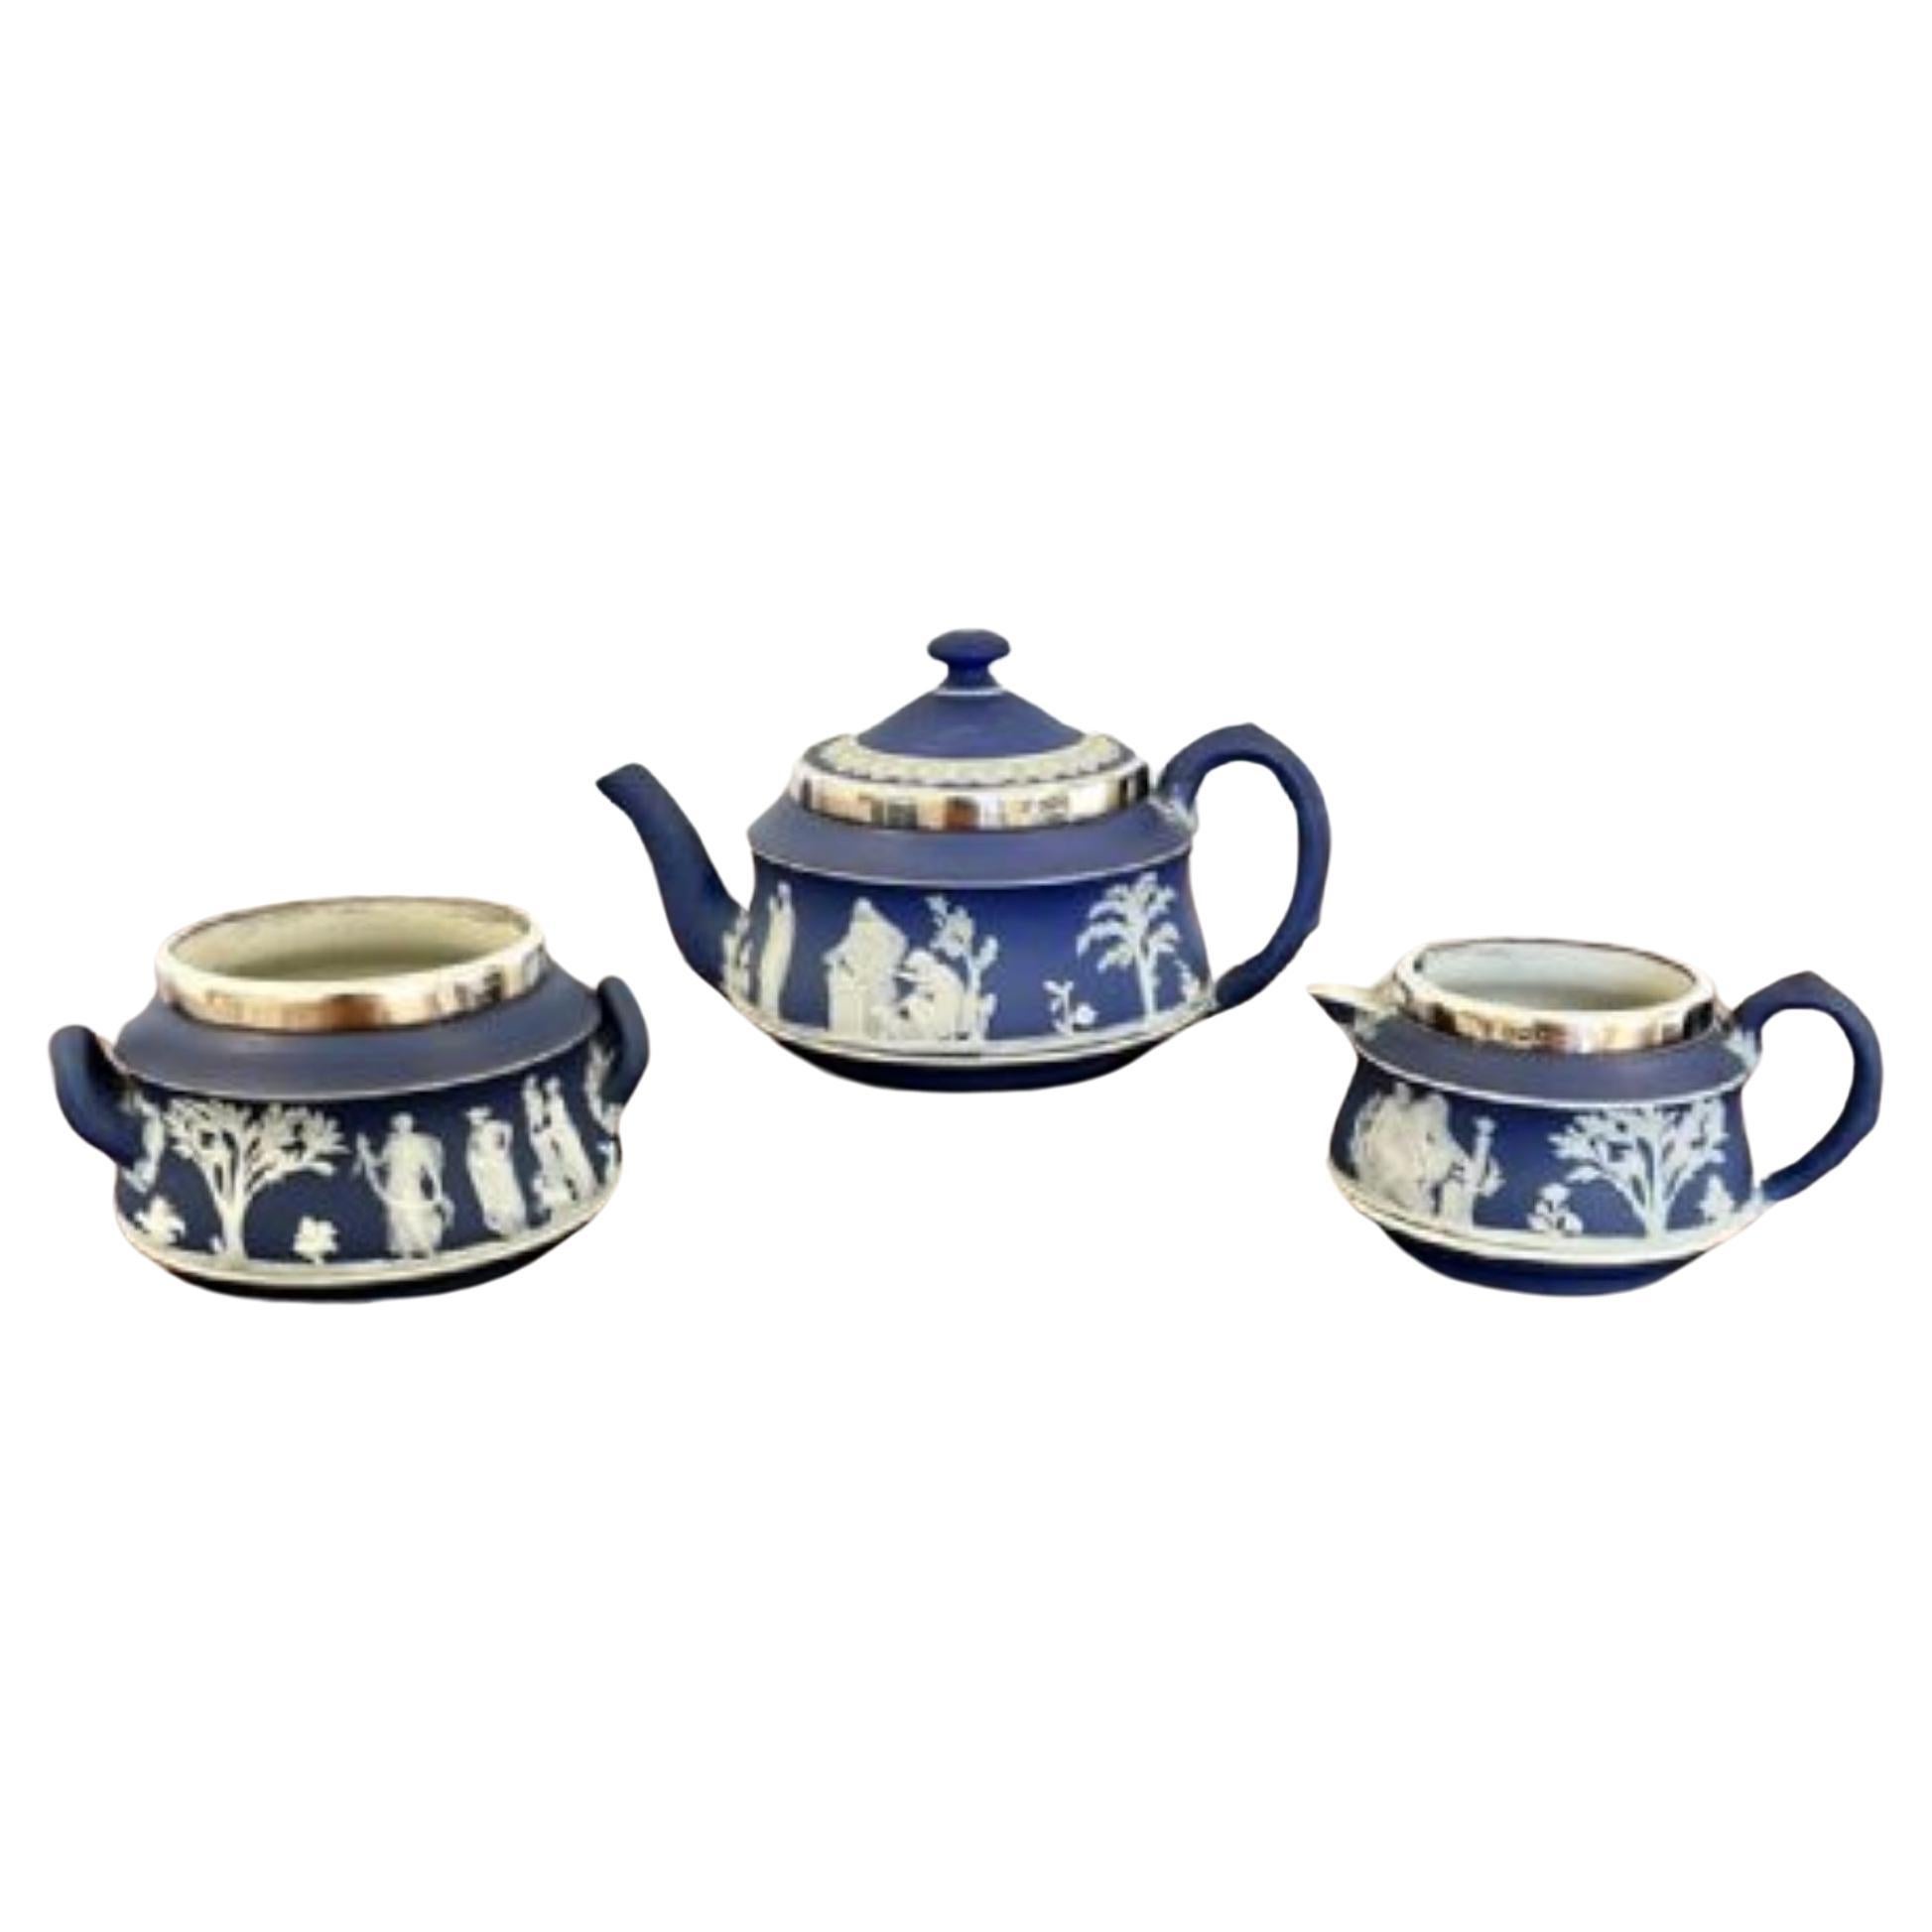 Service à thé trois pièces Jasperware Wedgwood de qualité, monté en argent, de l'Antiquité victorienne